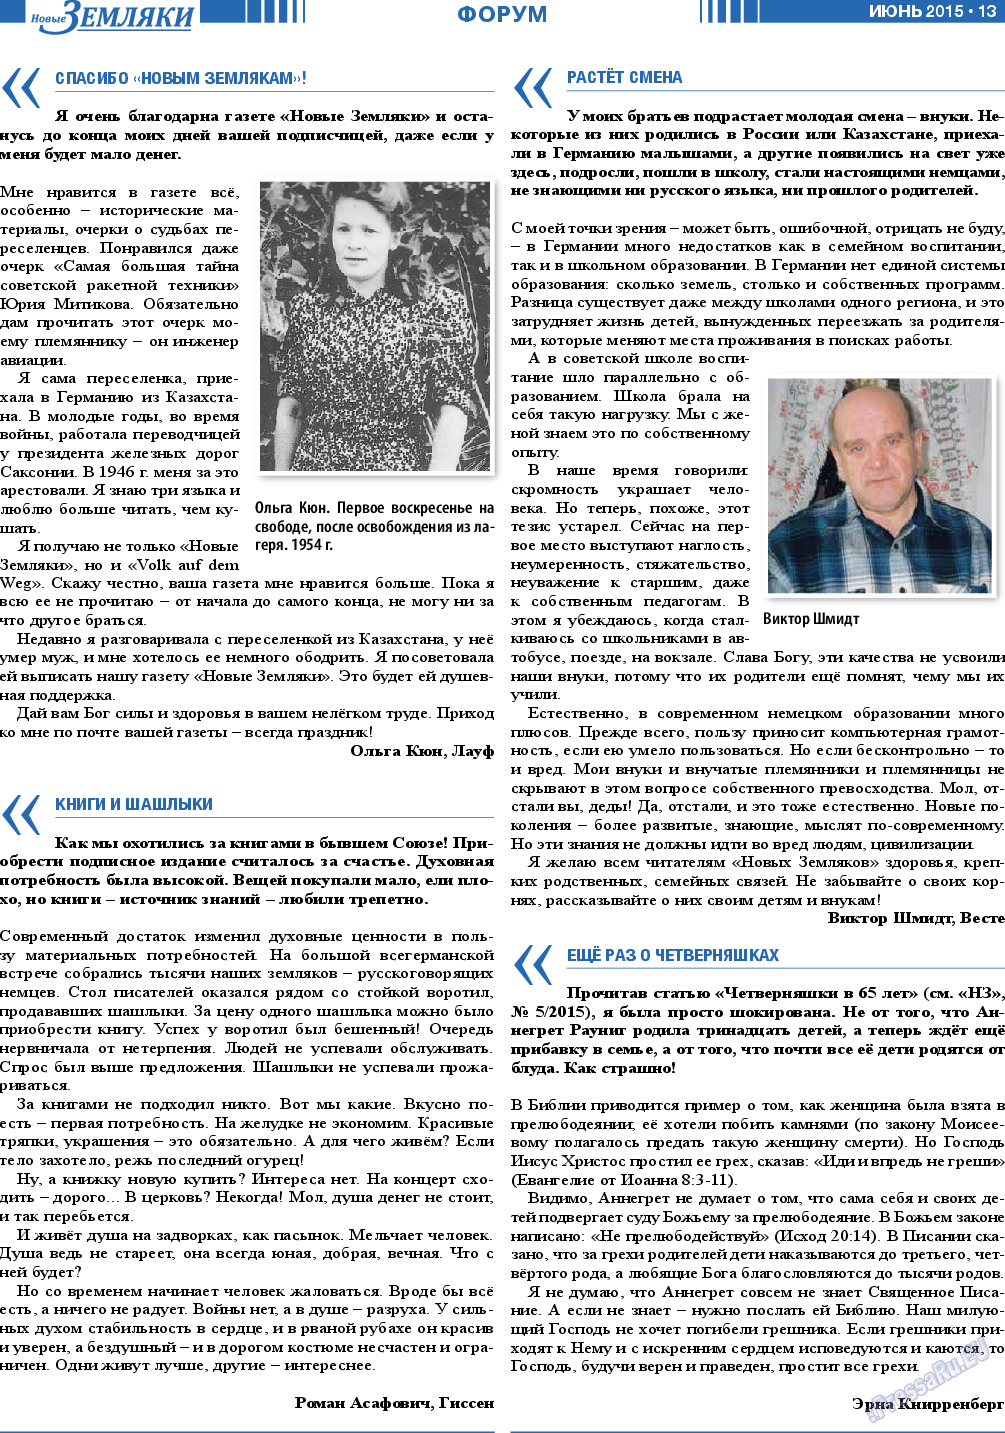 Новые Земляки (газета). 2015 год, номер 6, стр. 13